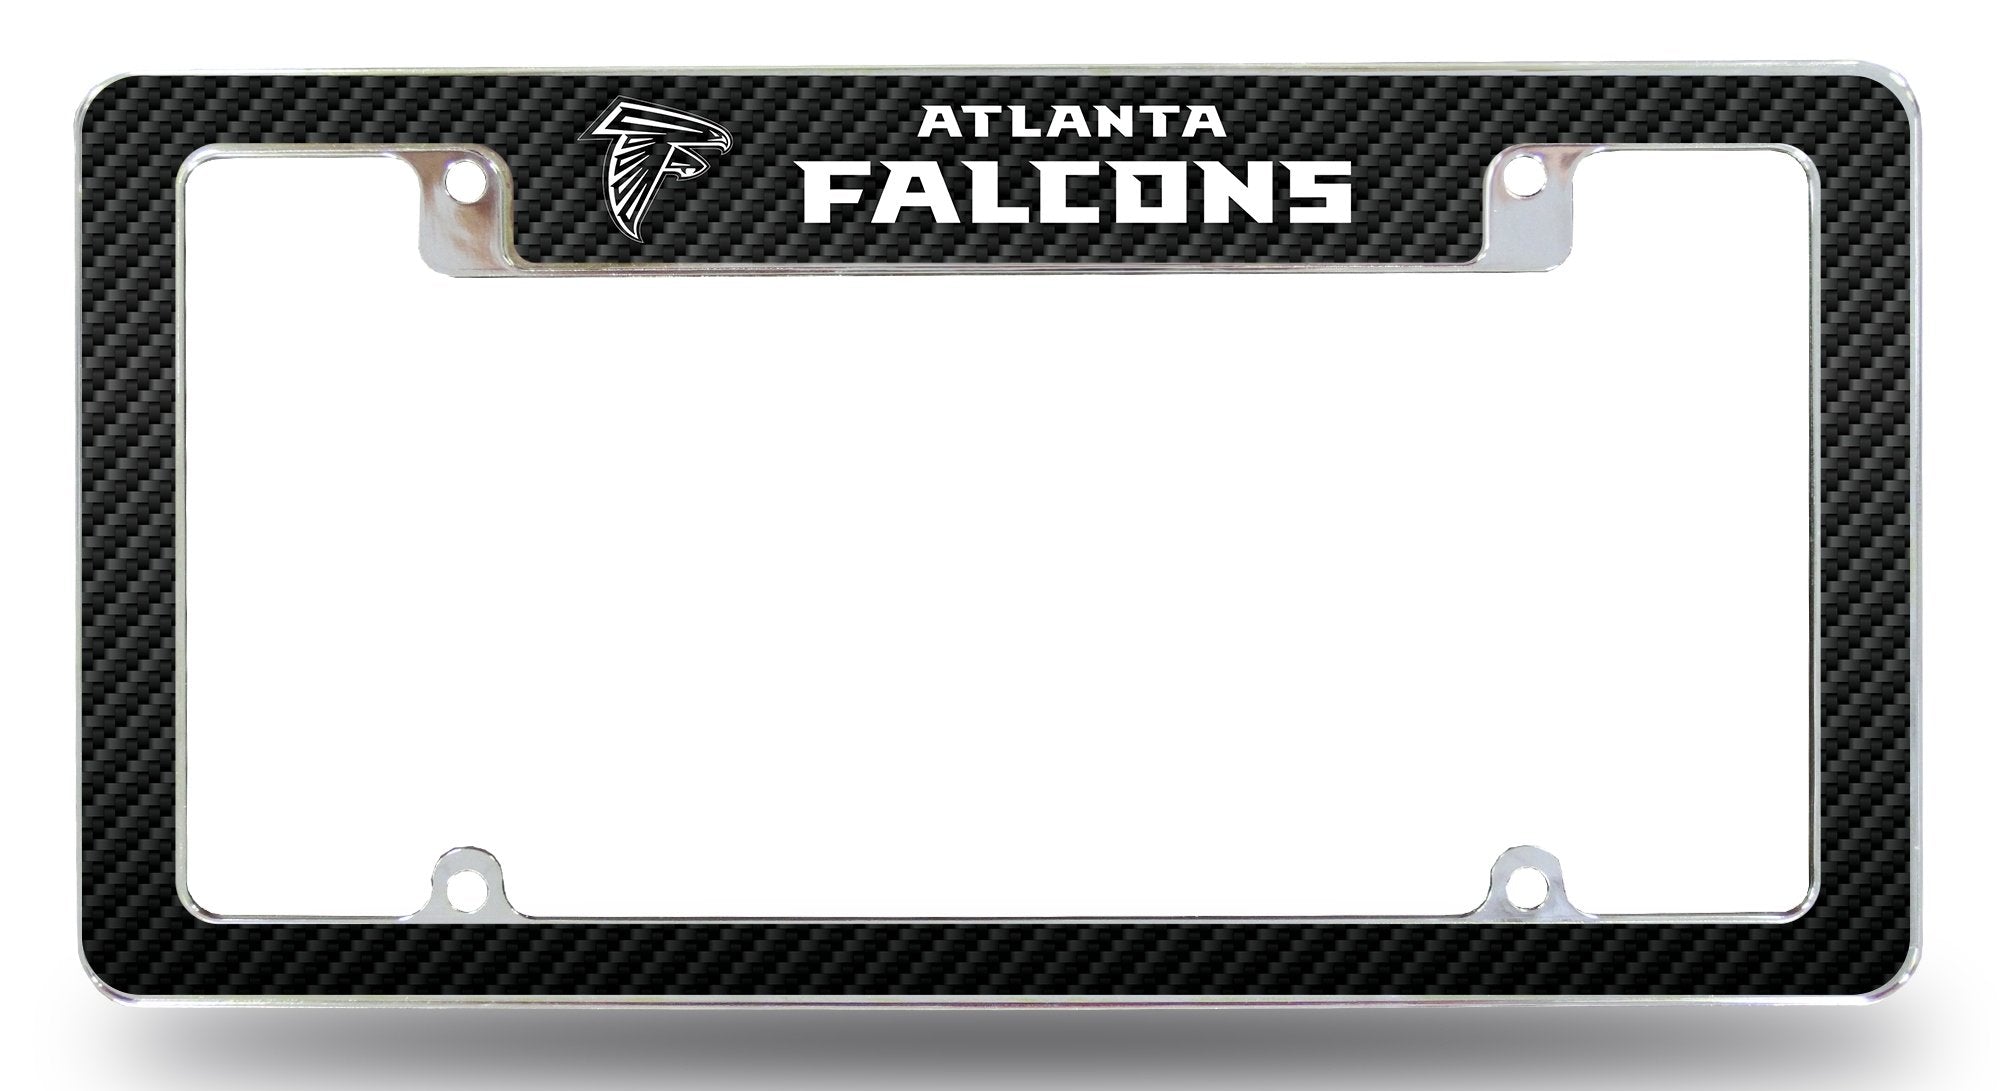 Atlanta Falcons Metal License Plate Frame Chrome Tag Cover, Carbon Fiber Design, 12x6 Inch